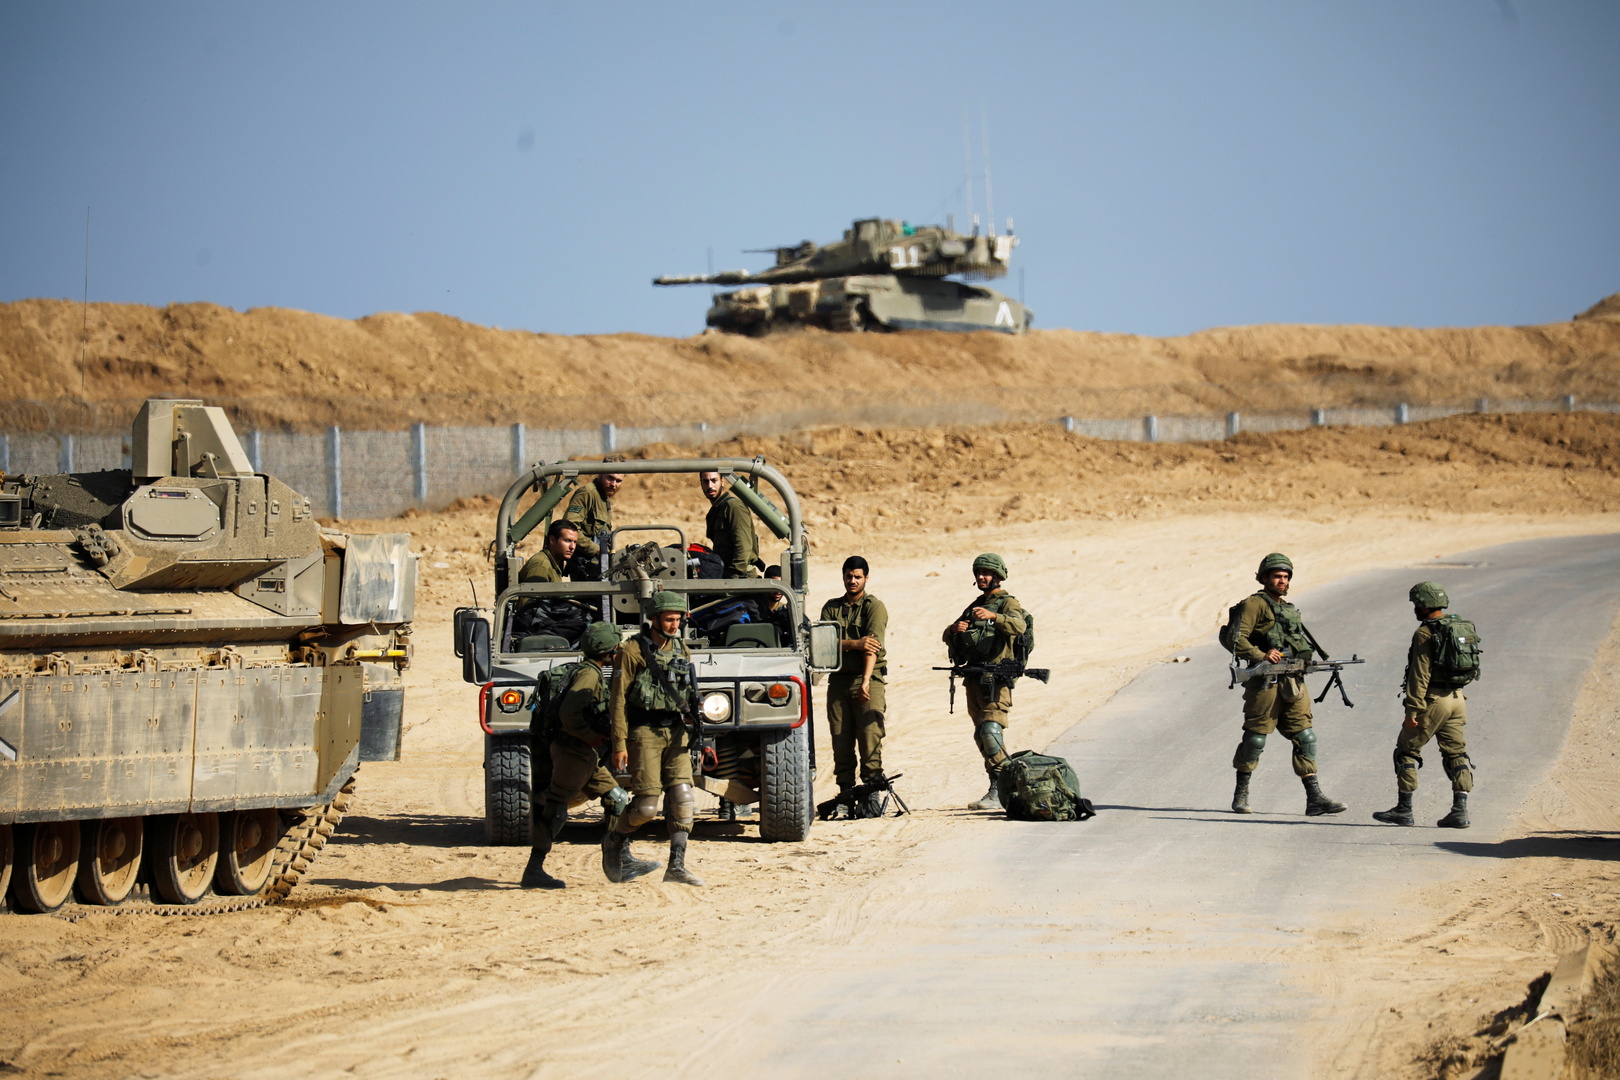 الجيش الإسرائيلي يستدعي آلاف عناصر الاحتياط ويلغي إجازات الجنود